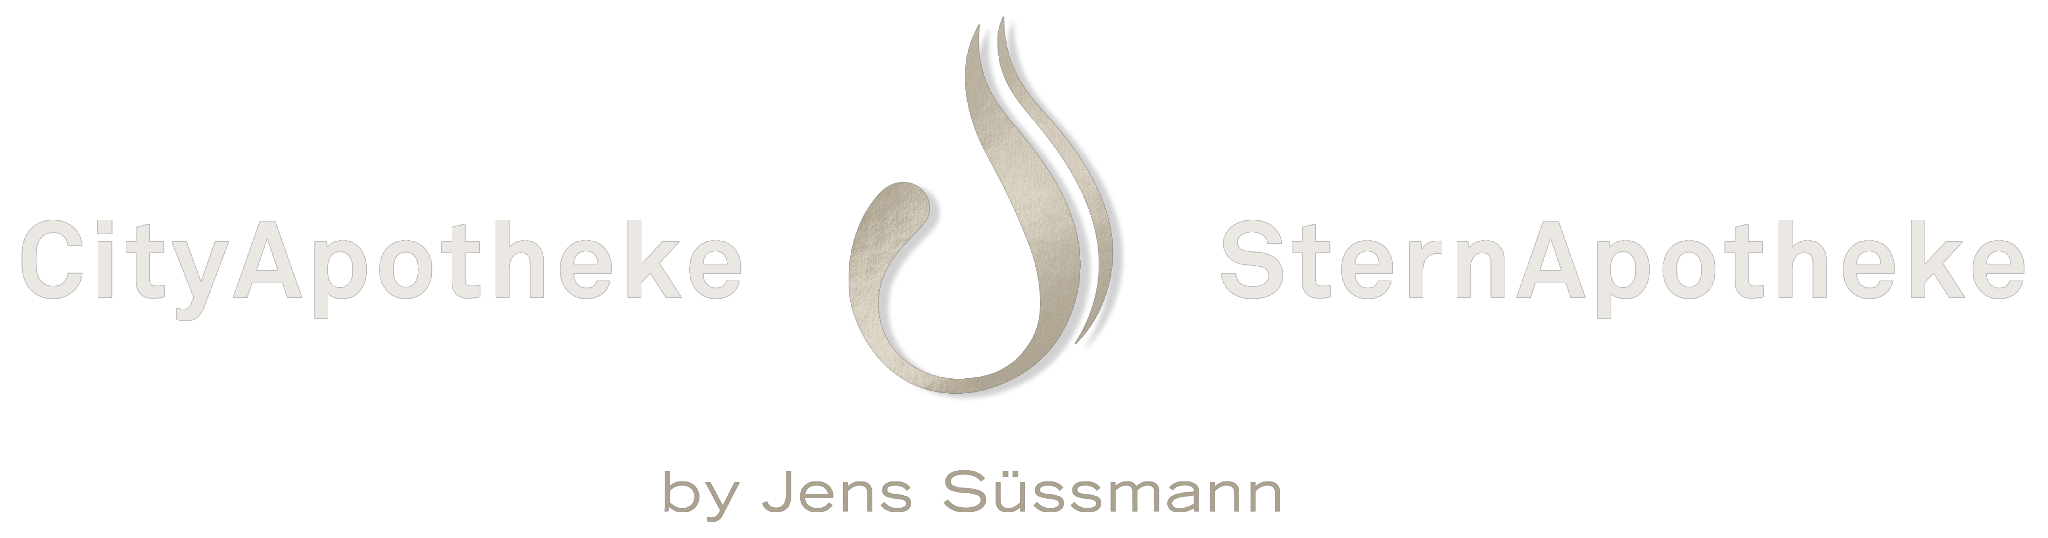 Schwarzer Hintergrund mit links „CityApotheke“, rechts „SternApotheke“ und mittig ein stilisiertes abstraktes Emblem. Darunter steht in kleinerer Schrift „von Jens Süssmann“.